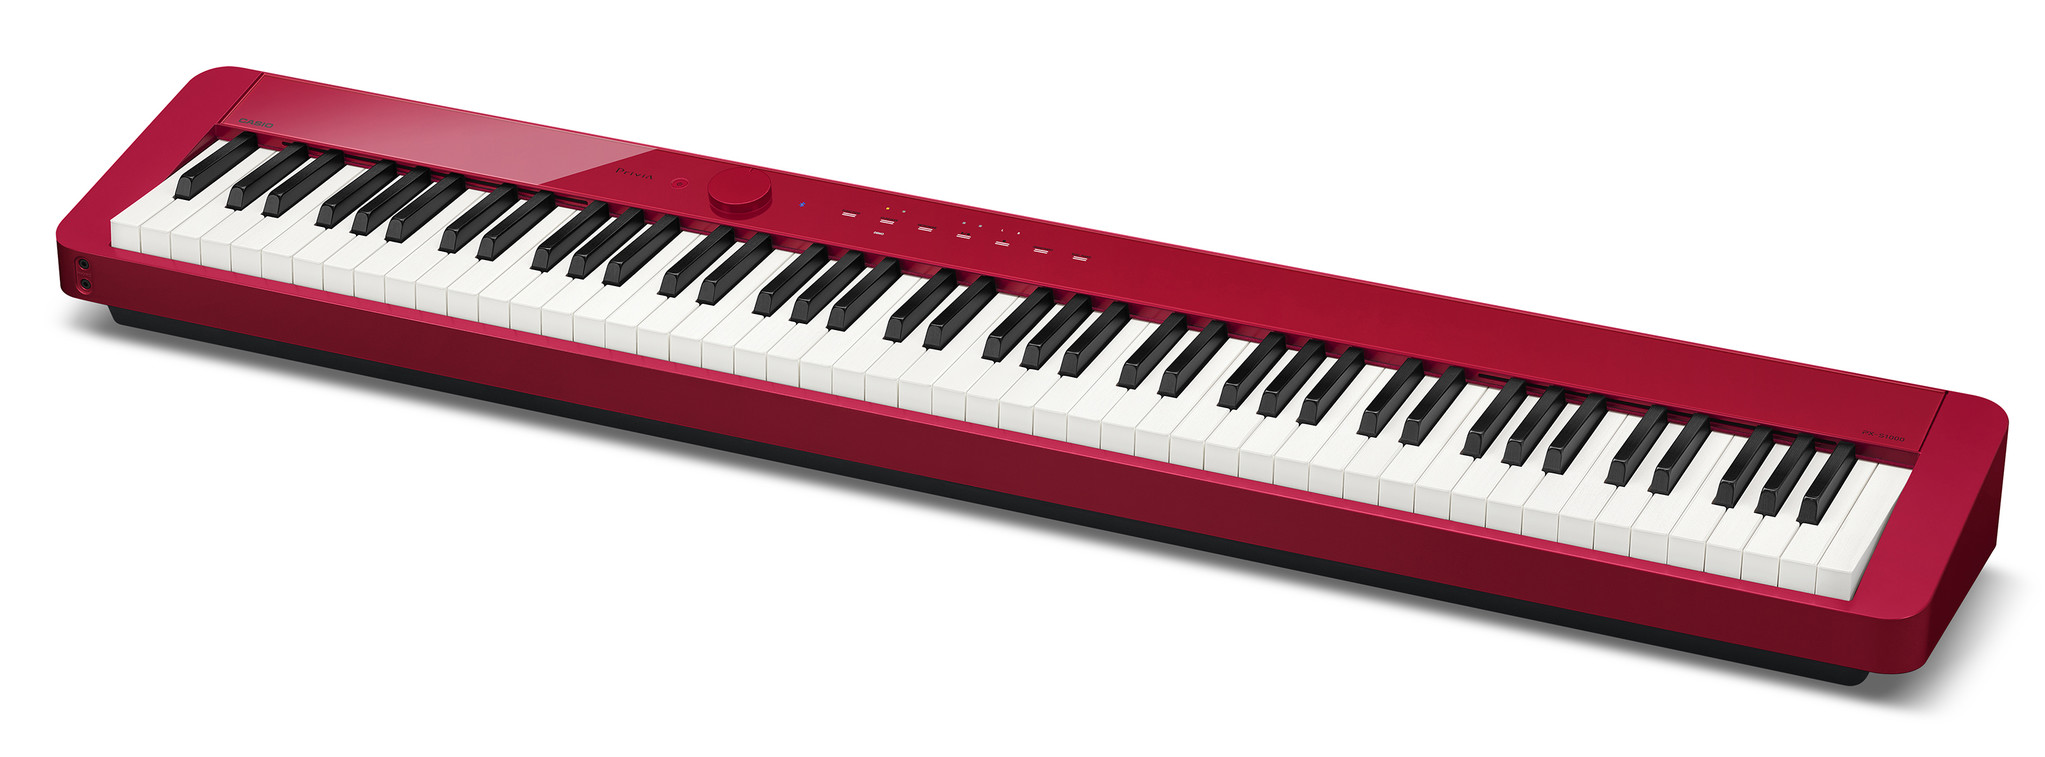 業界で最もスリムでスタイリッシュな電子ピアノ“Privia”「PX-S1000」に